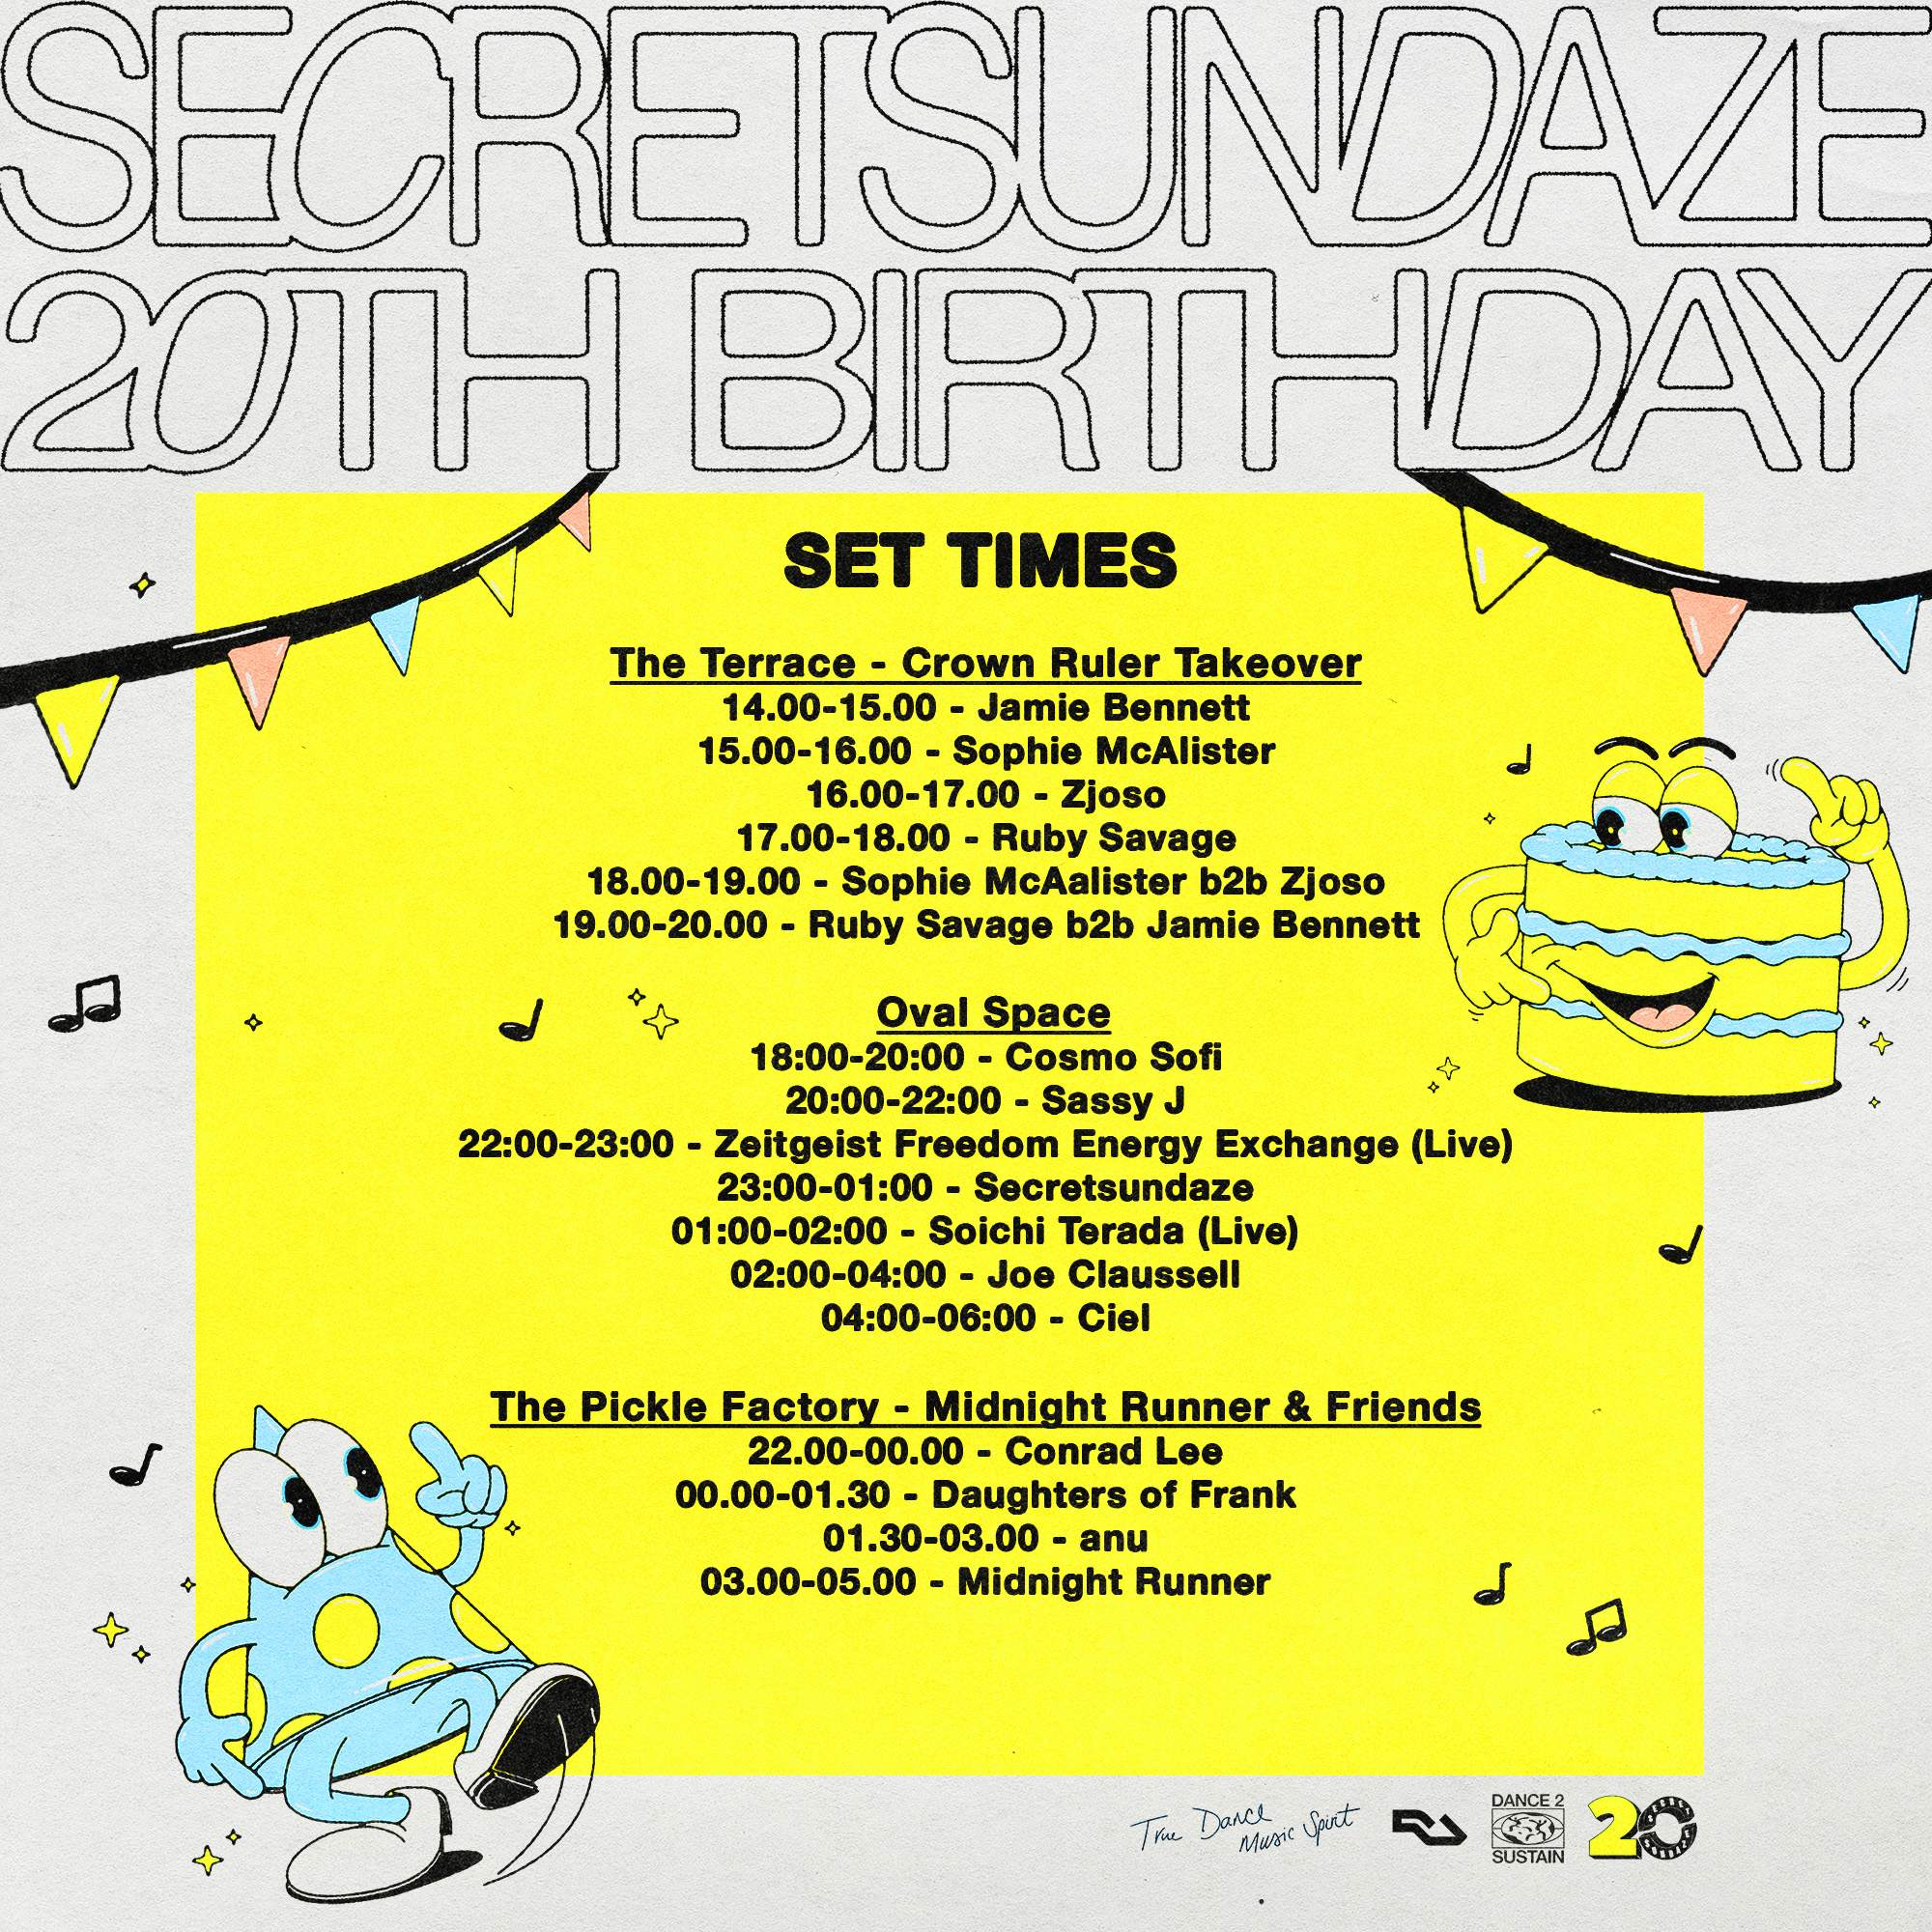 Secretsundaze 20th Birthday Party - Página trasera